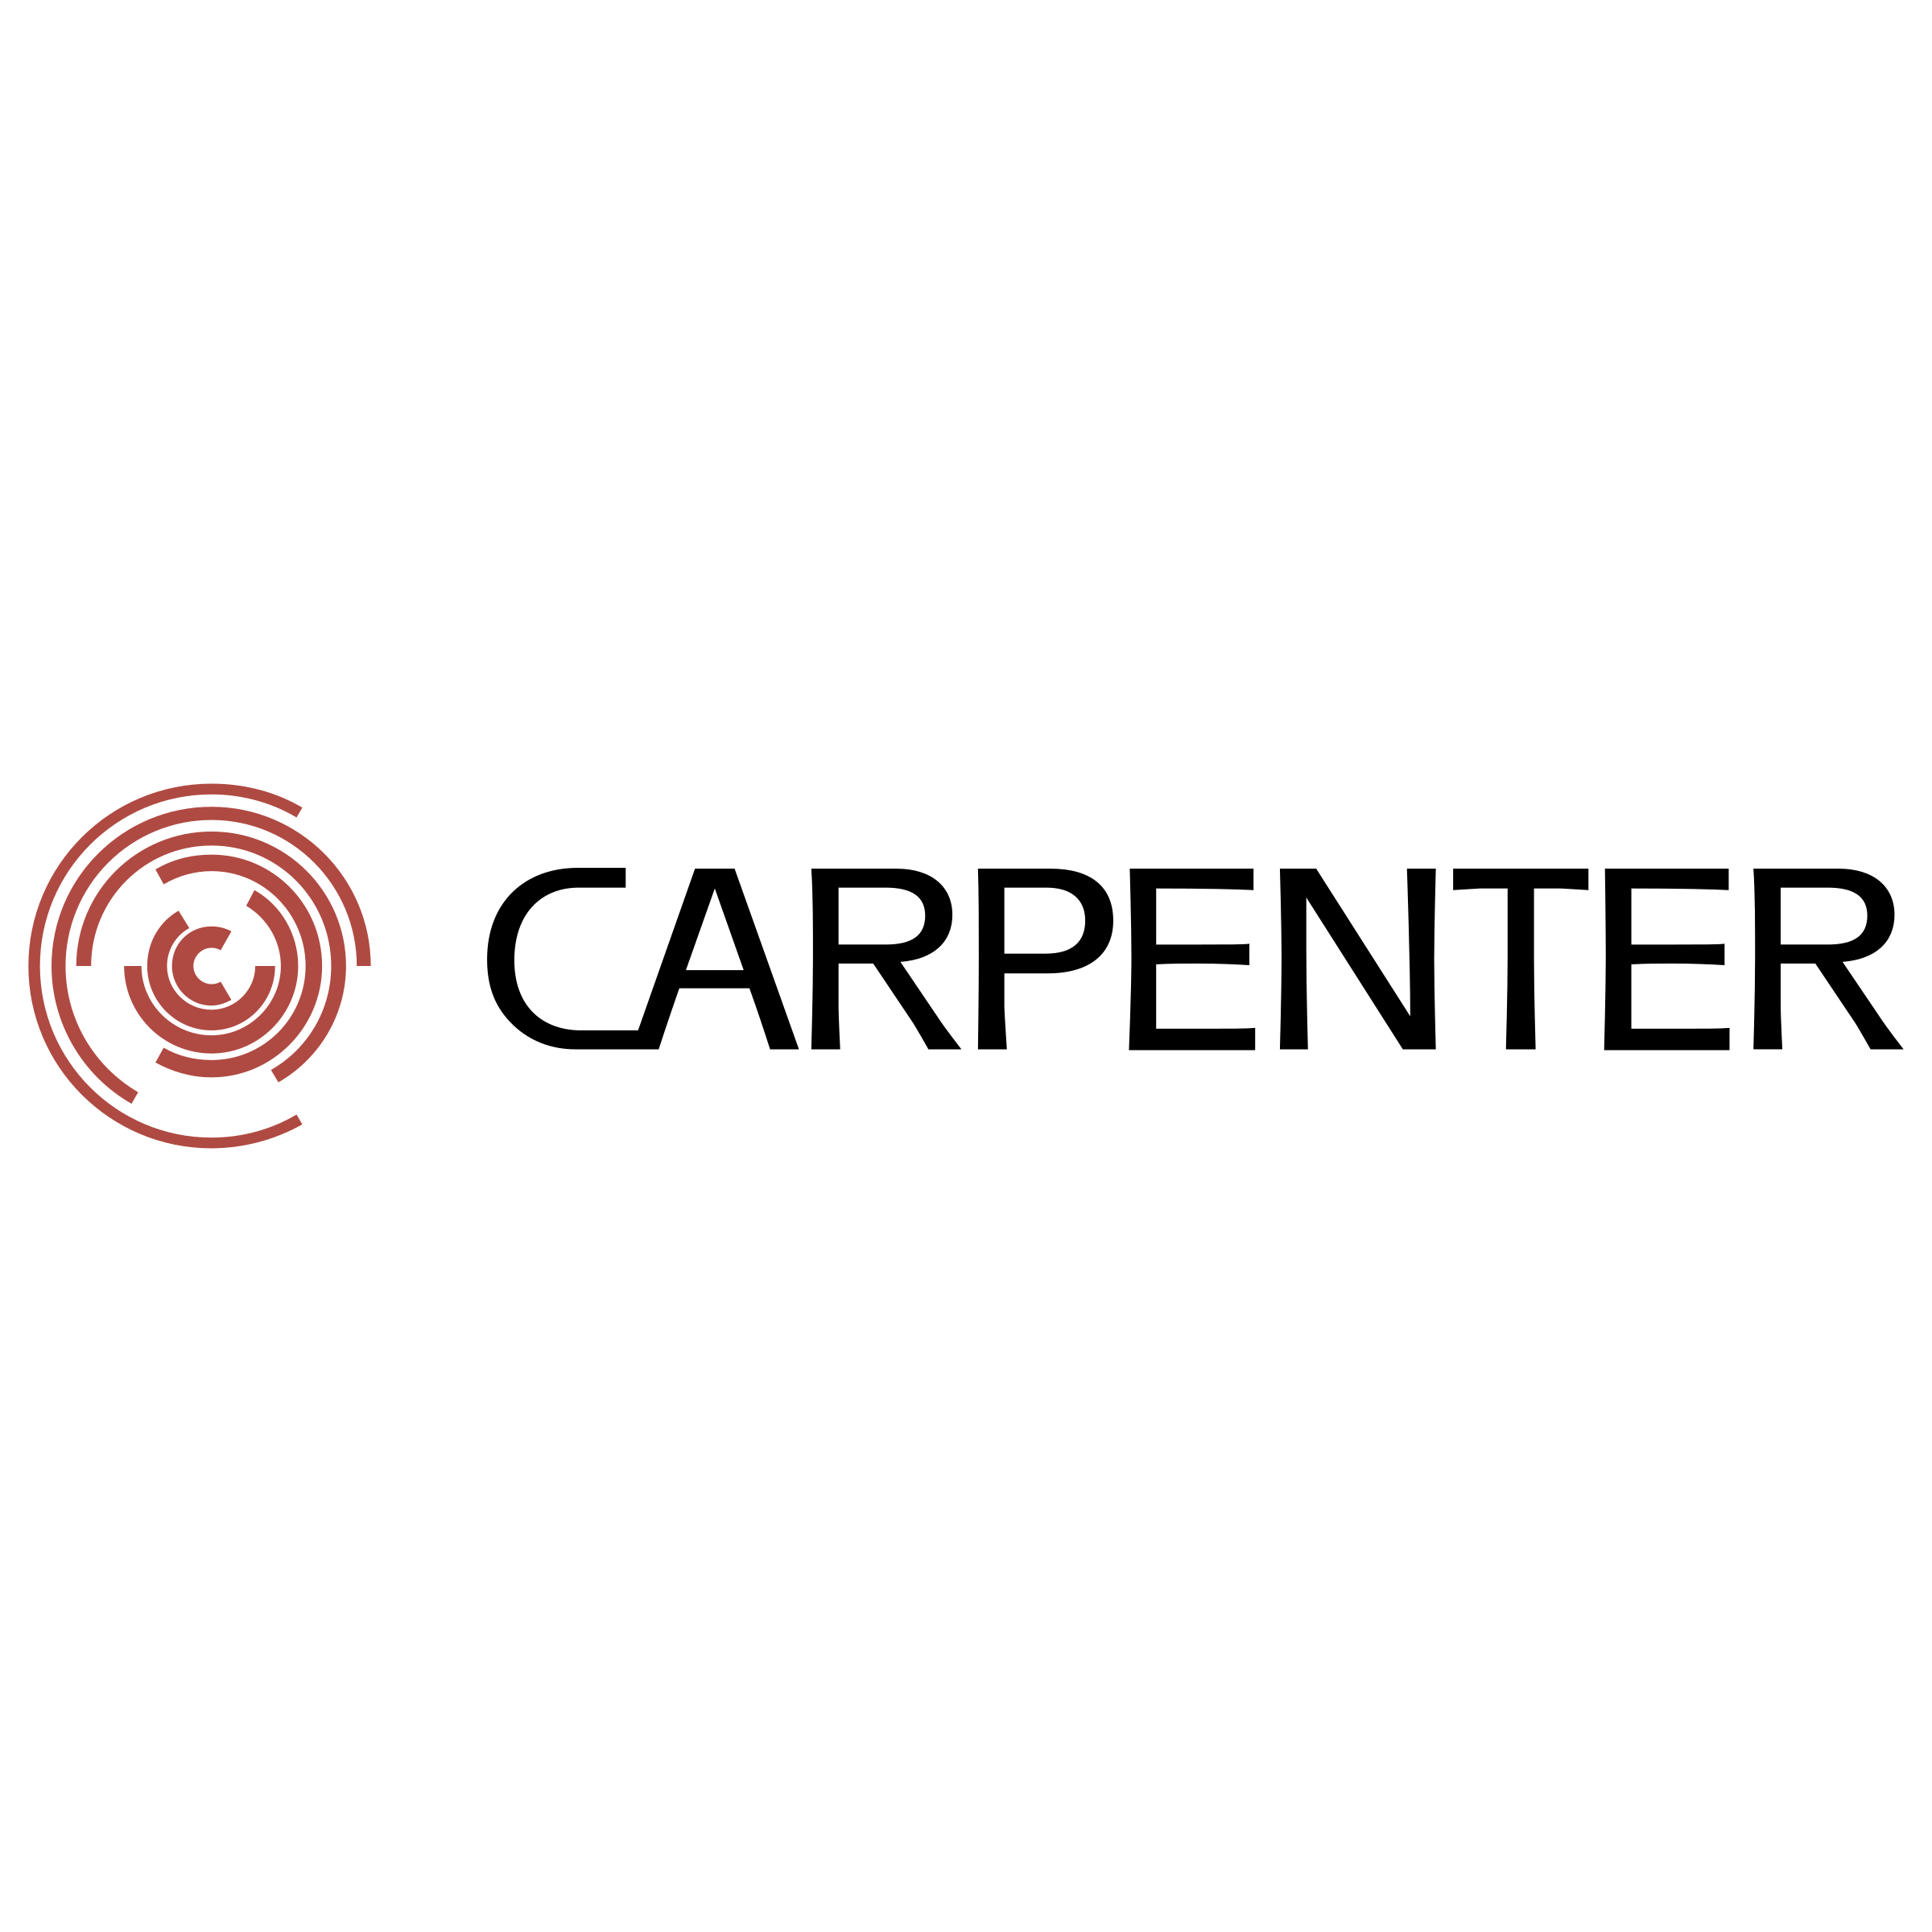 Carpenter Logo - Carpenter Logo PNG Transparent & SVG Vector